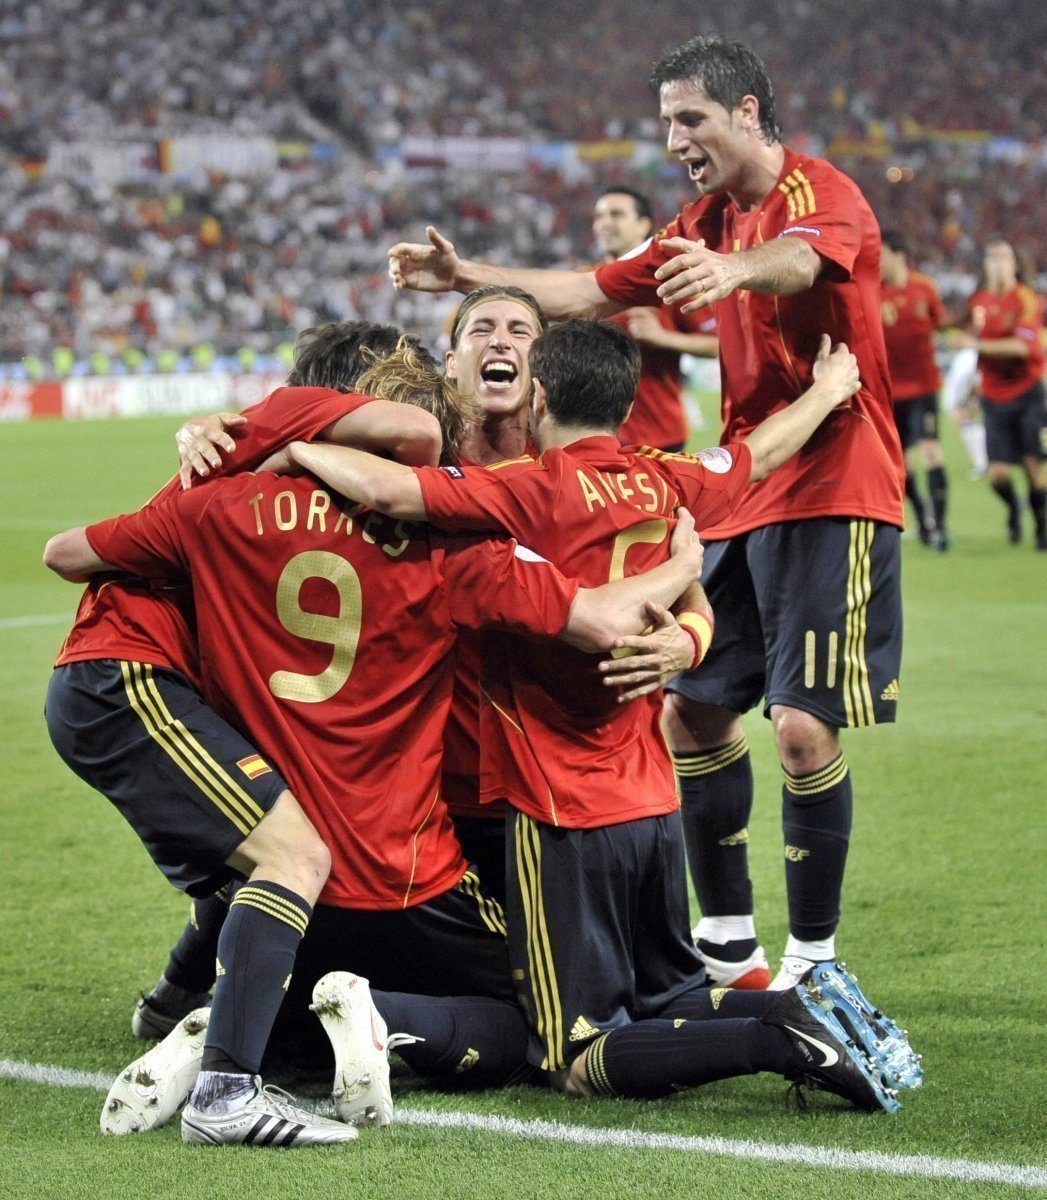 Španělé oslavují Torresův gól